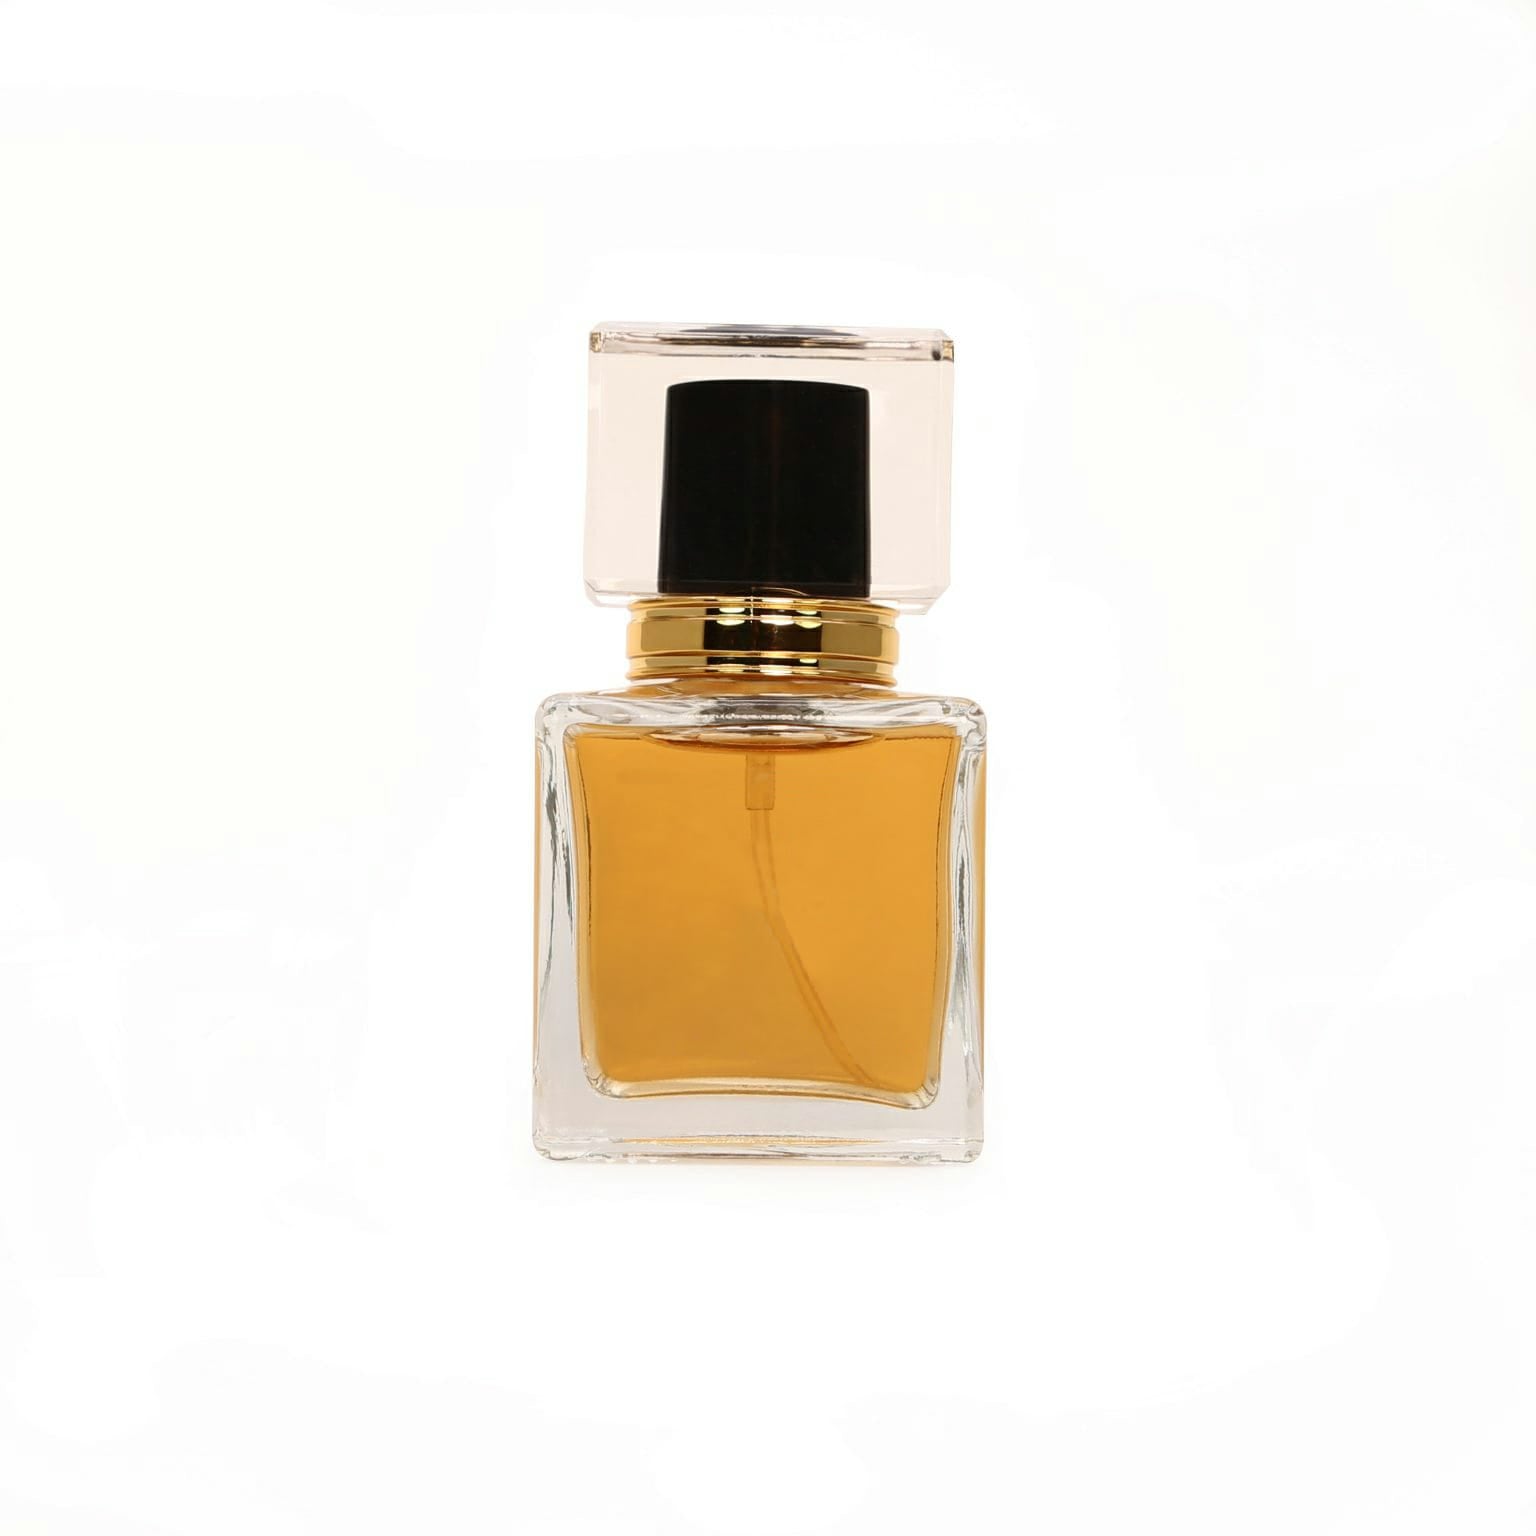 Perfumer Reviews 'L'Immensité' - Louis Vuitton 